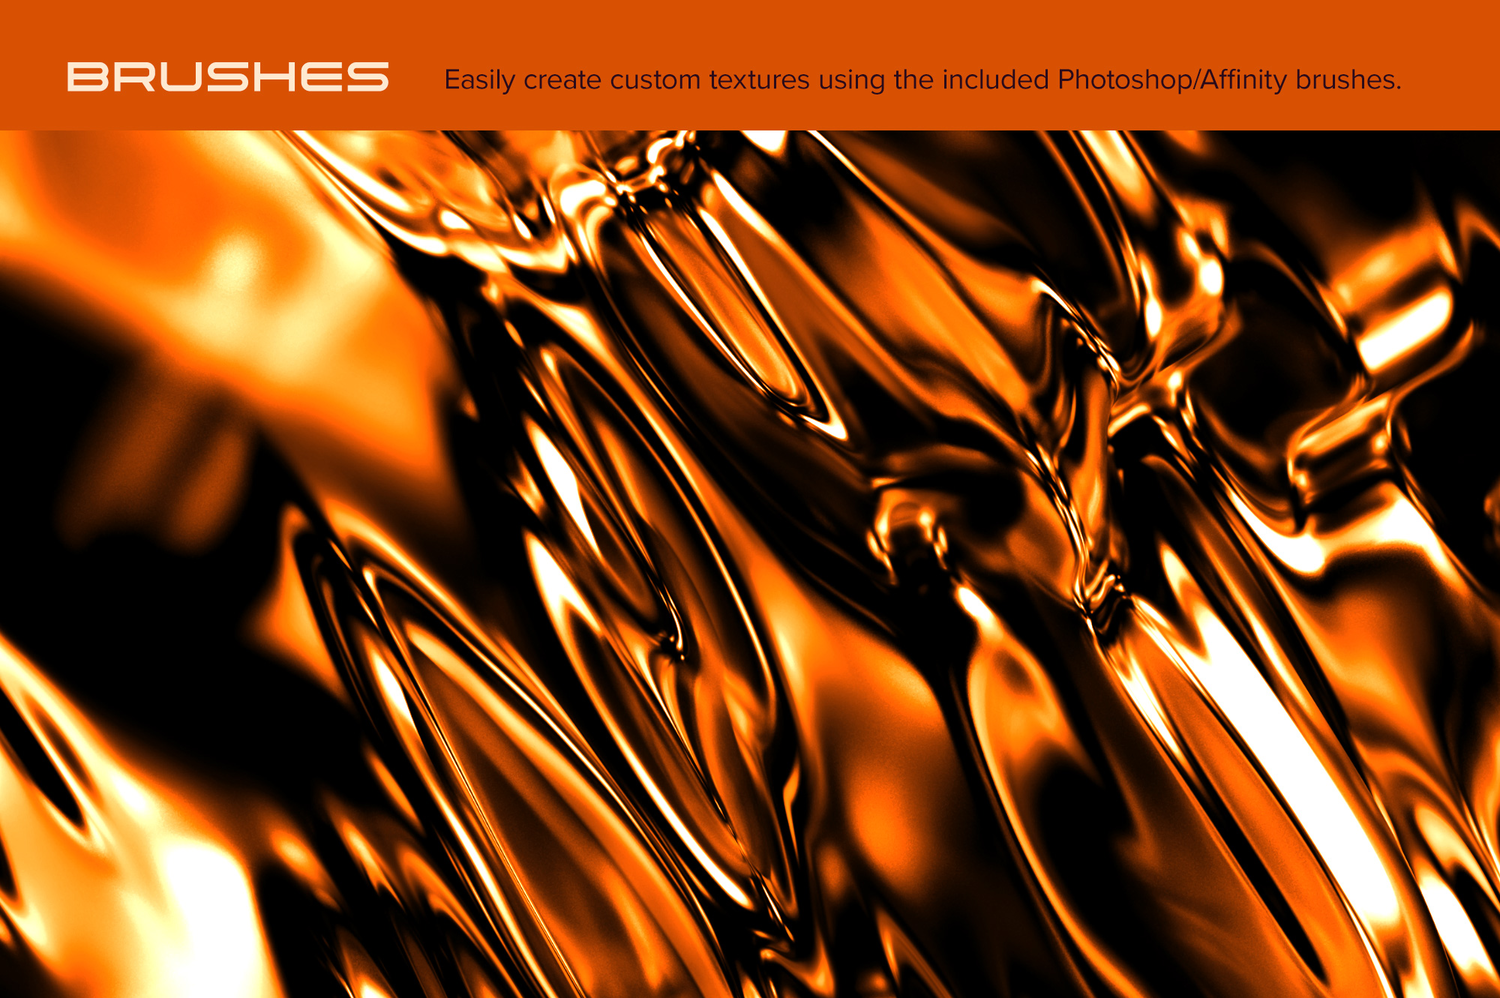 2077 潮流抽象多彩流体波浪3D金属专辑海报封面设计背景图片素材 Luminous Reflective 3D Textures